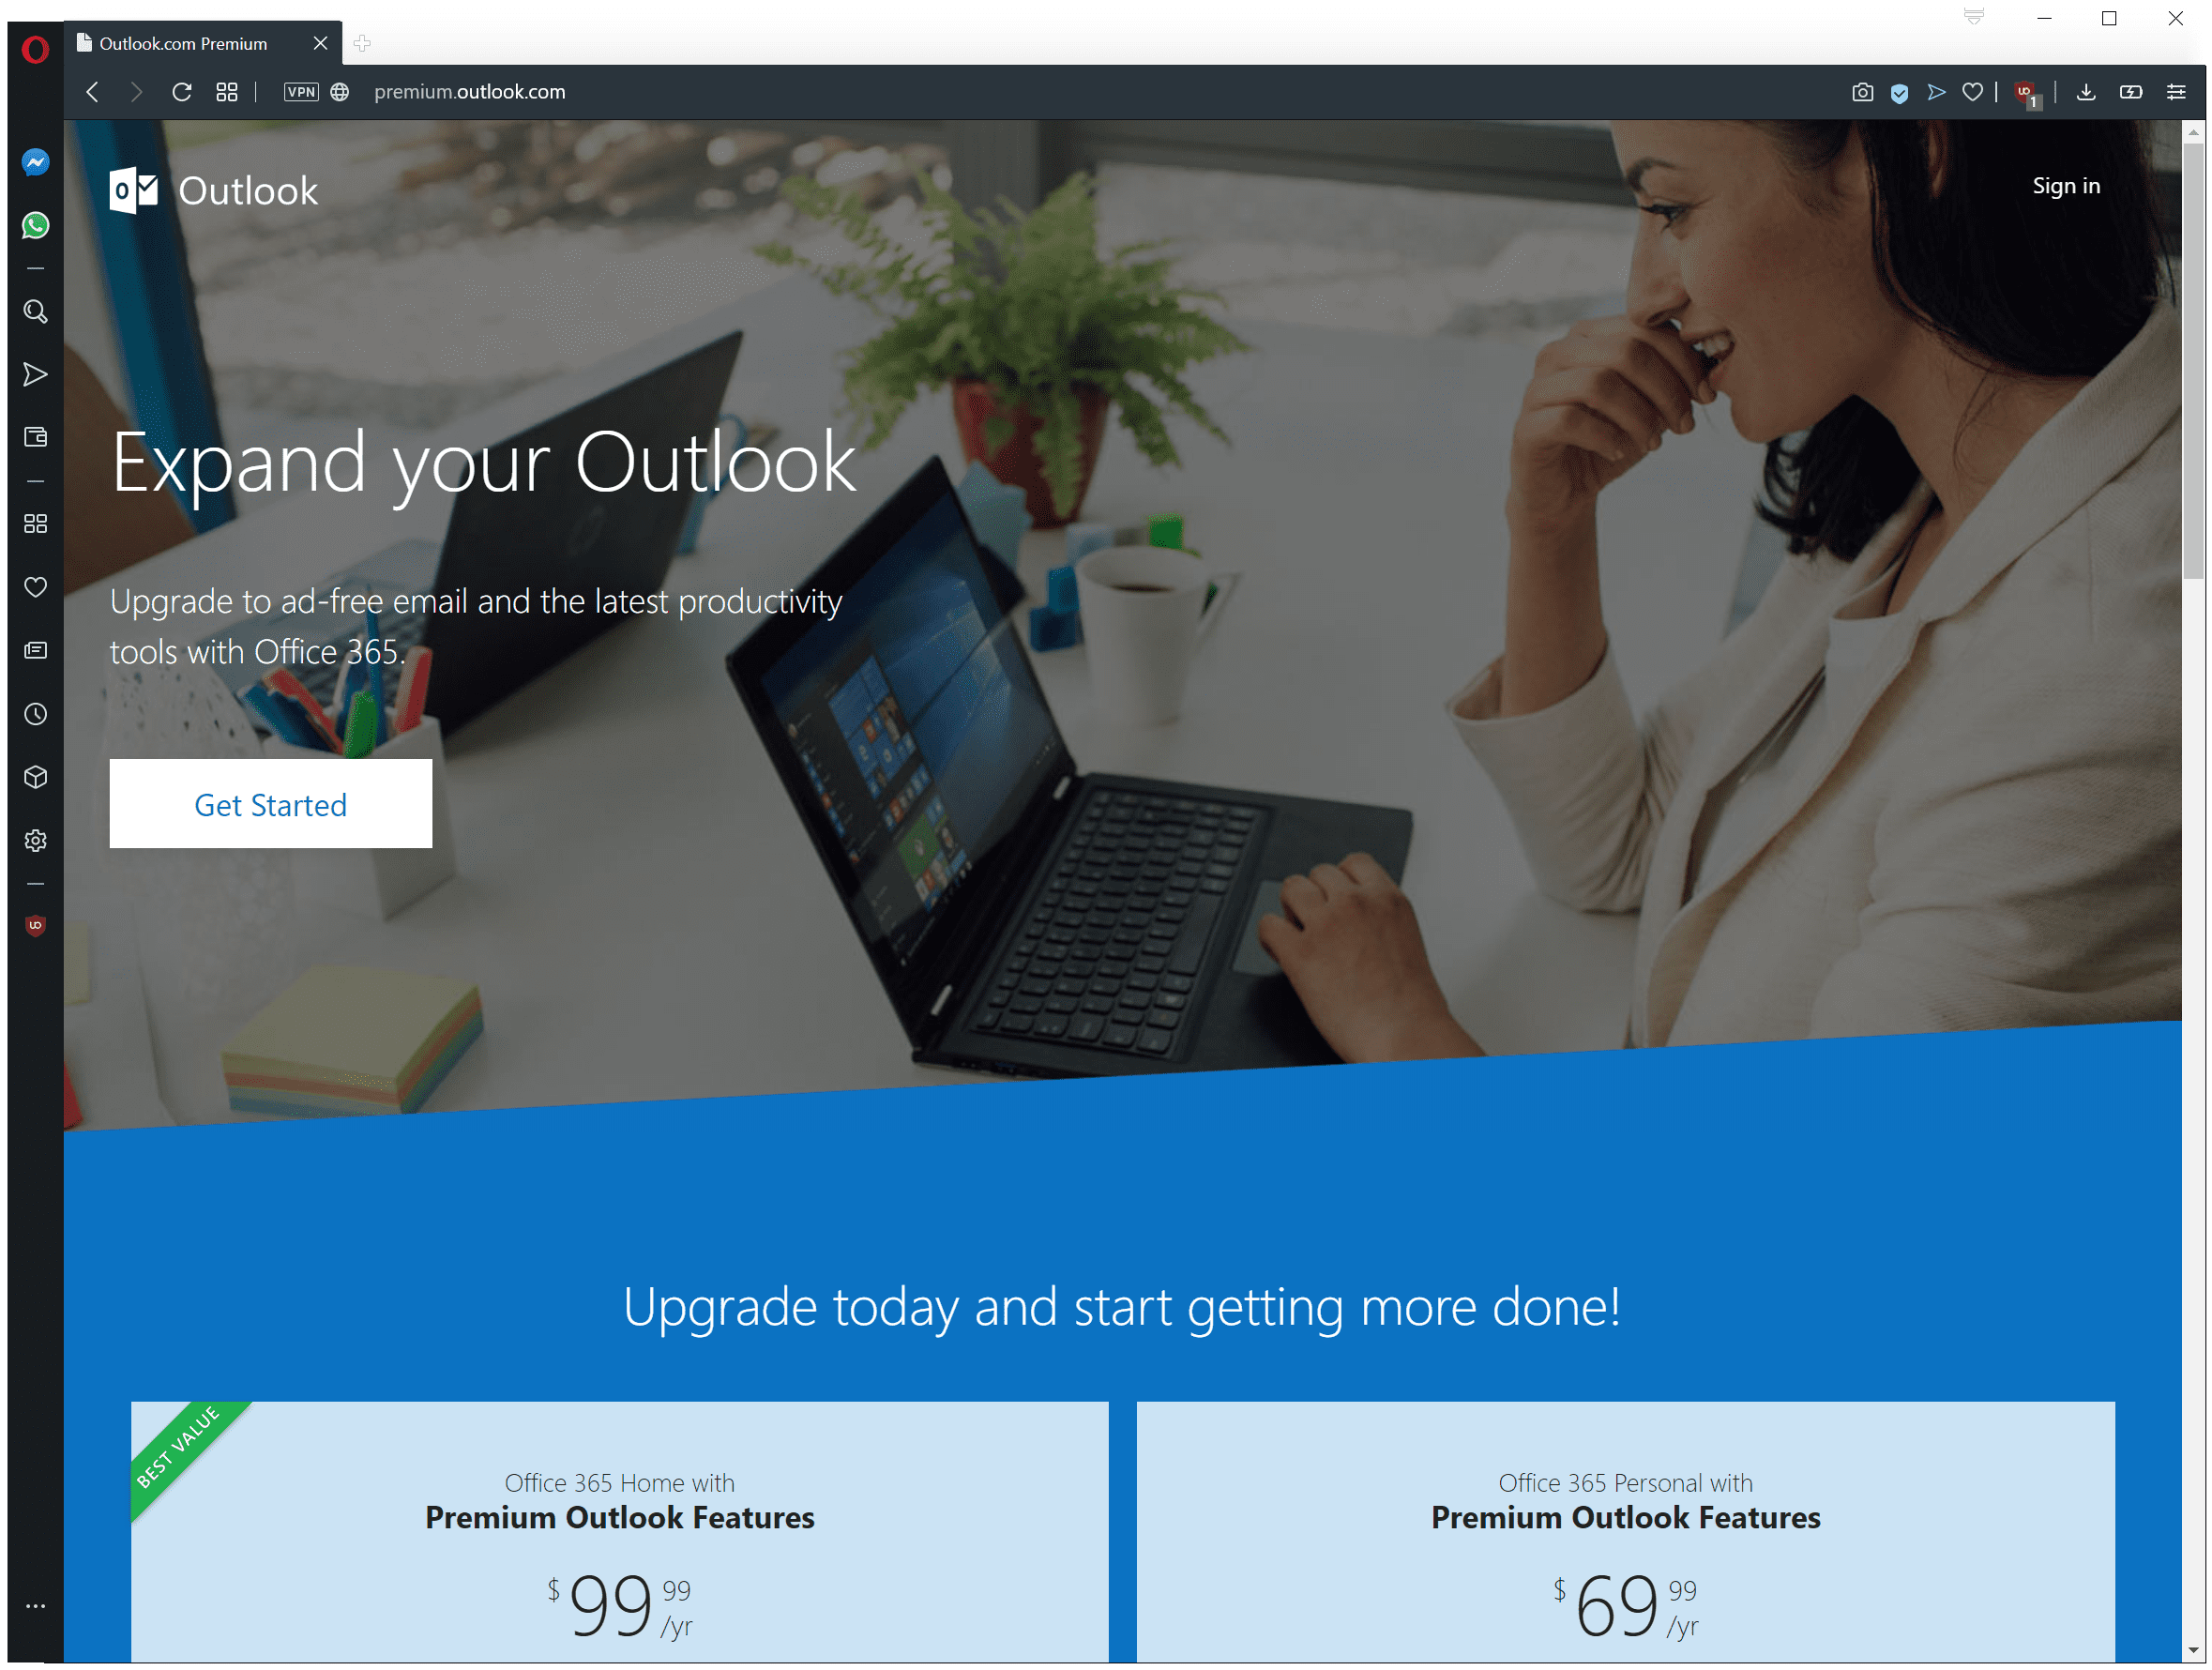 Đó là địa chỉ email Premium của Outlook.com? Đã qua, trừ khi bạn nhận được đăng ký Office 365